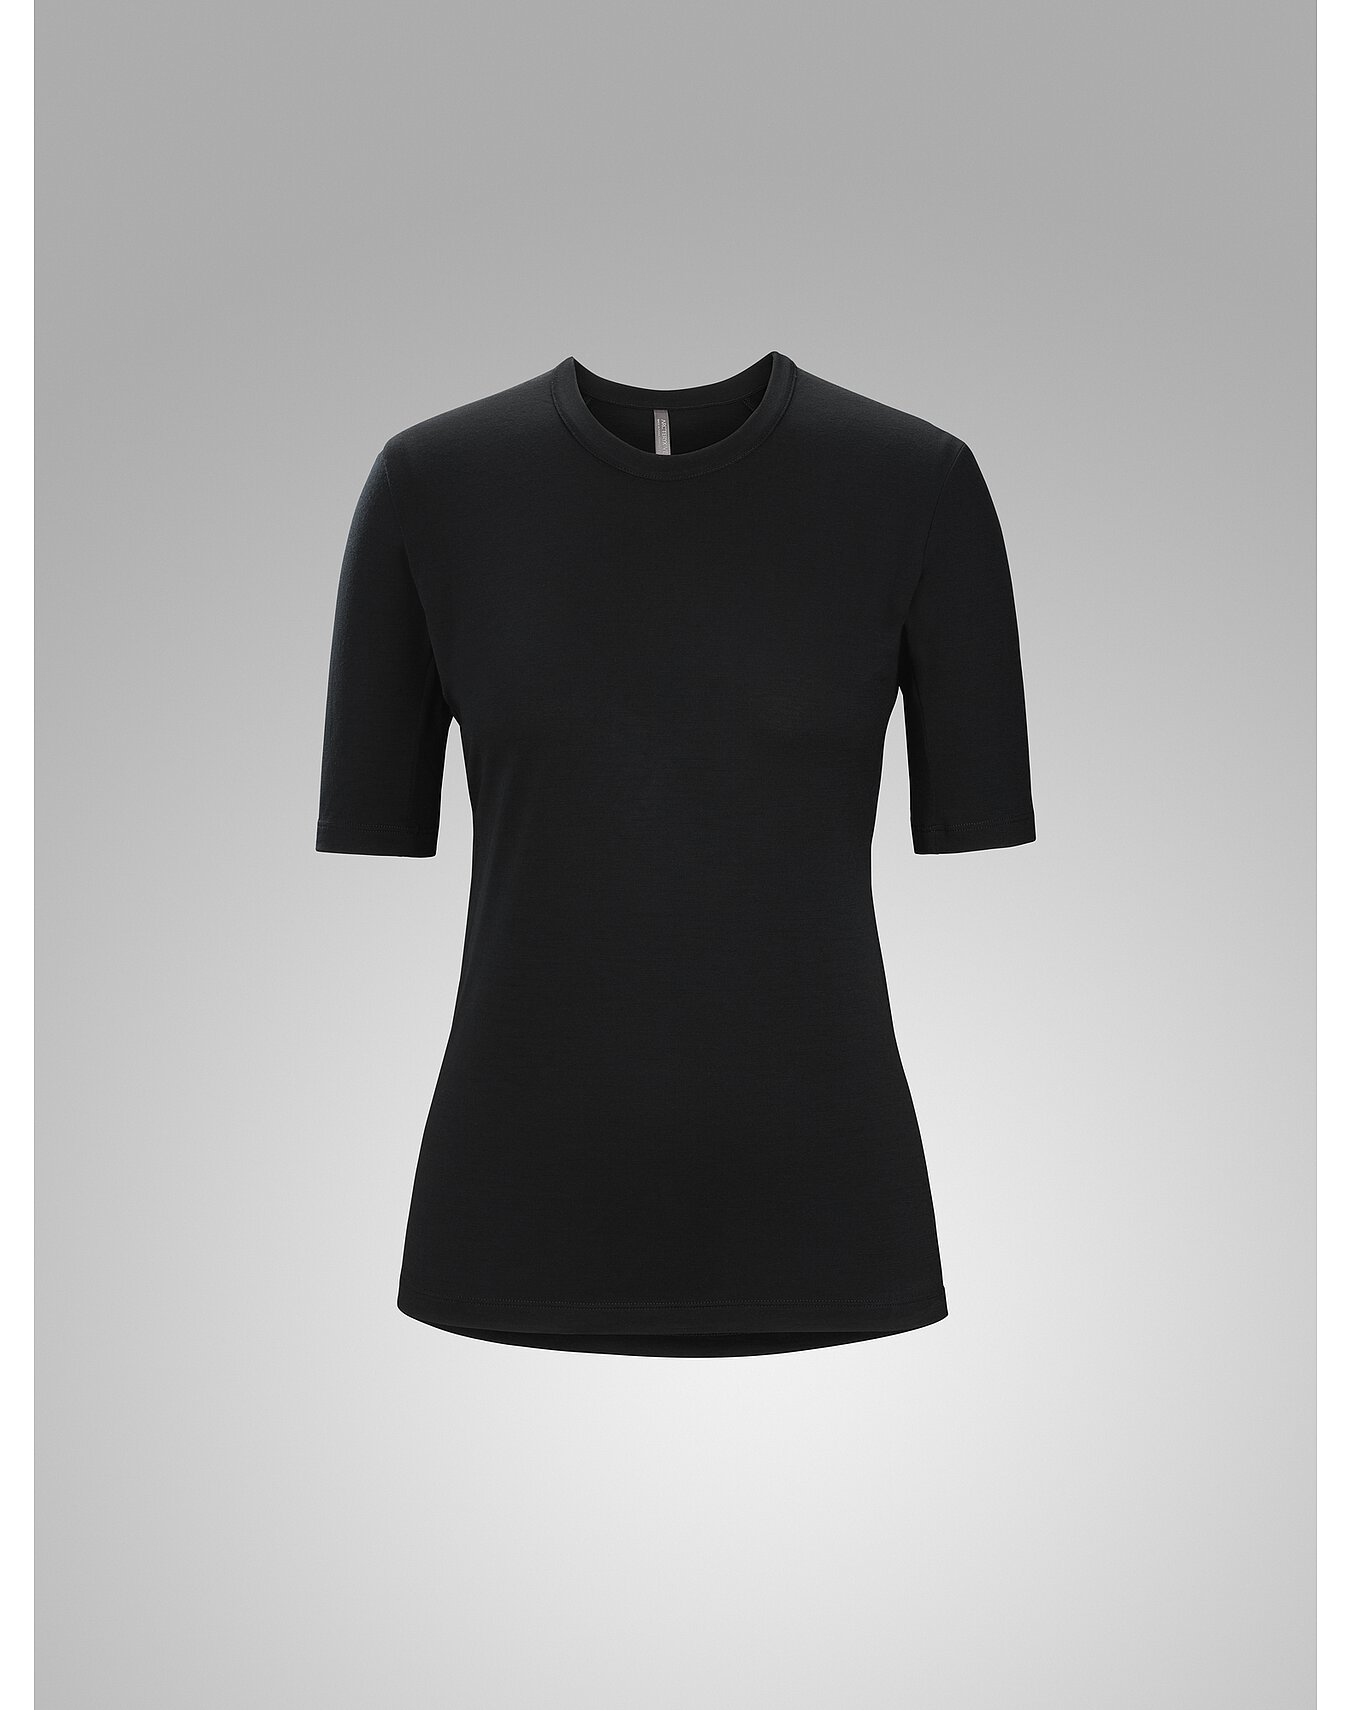 Frame Shirt SS Women's | Arc'teryx Outlet